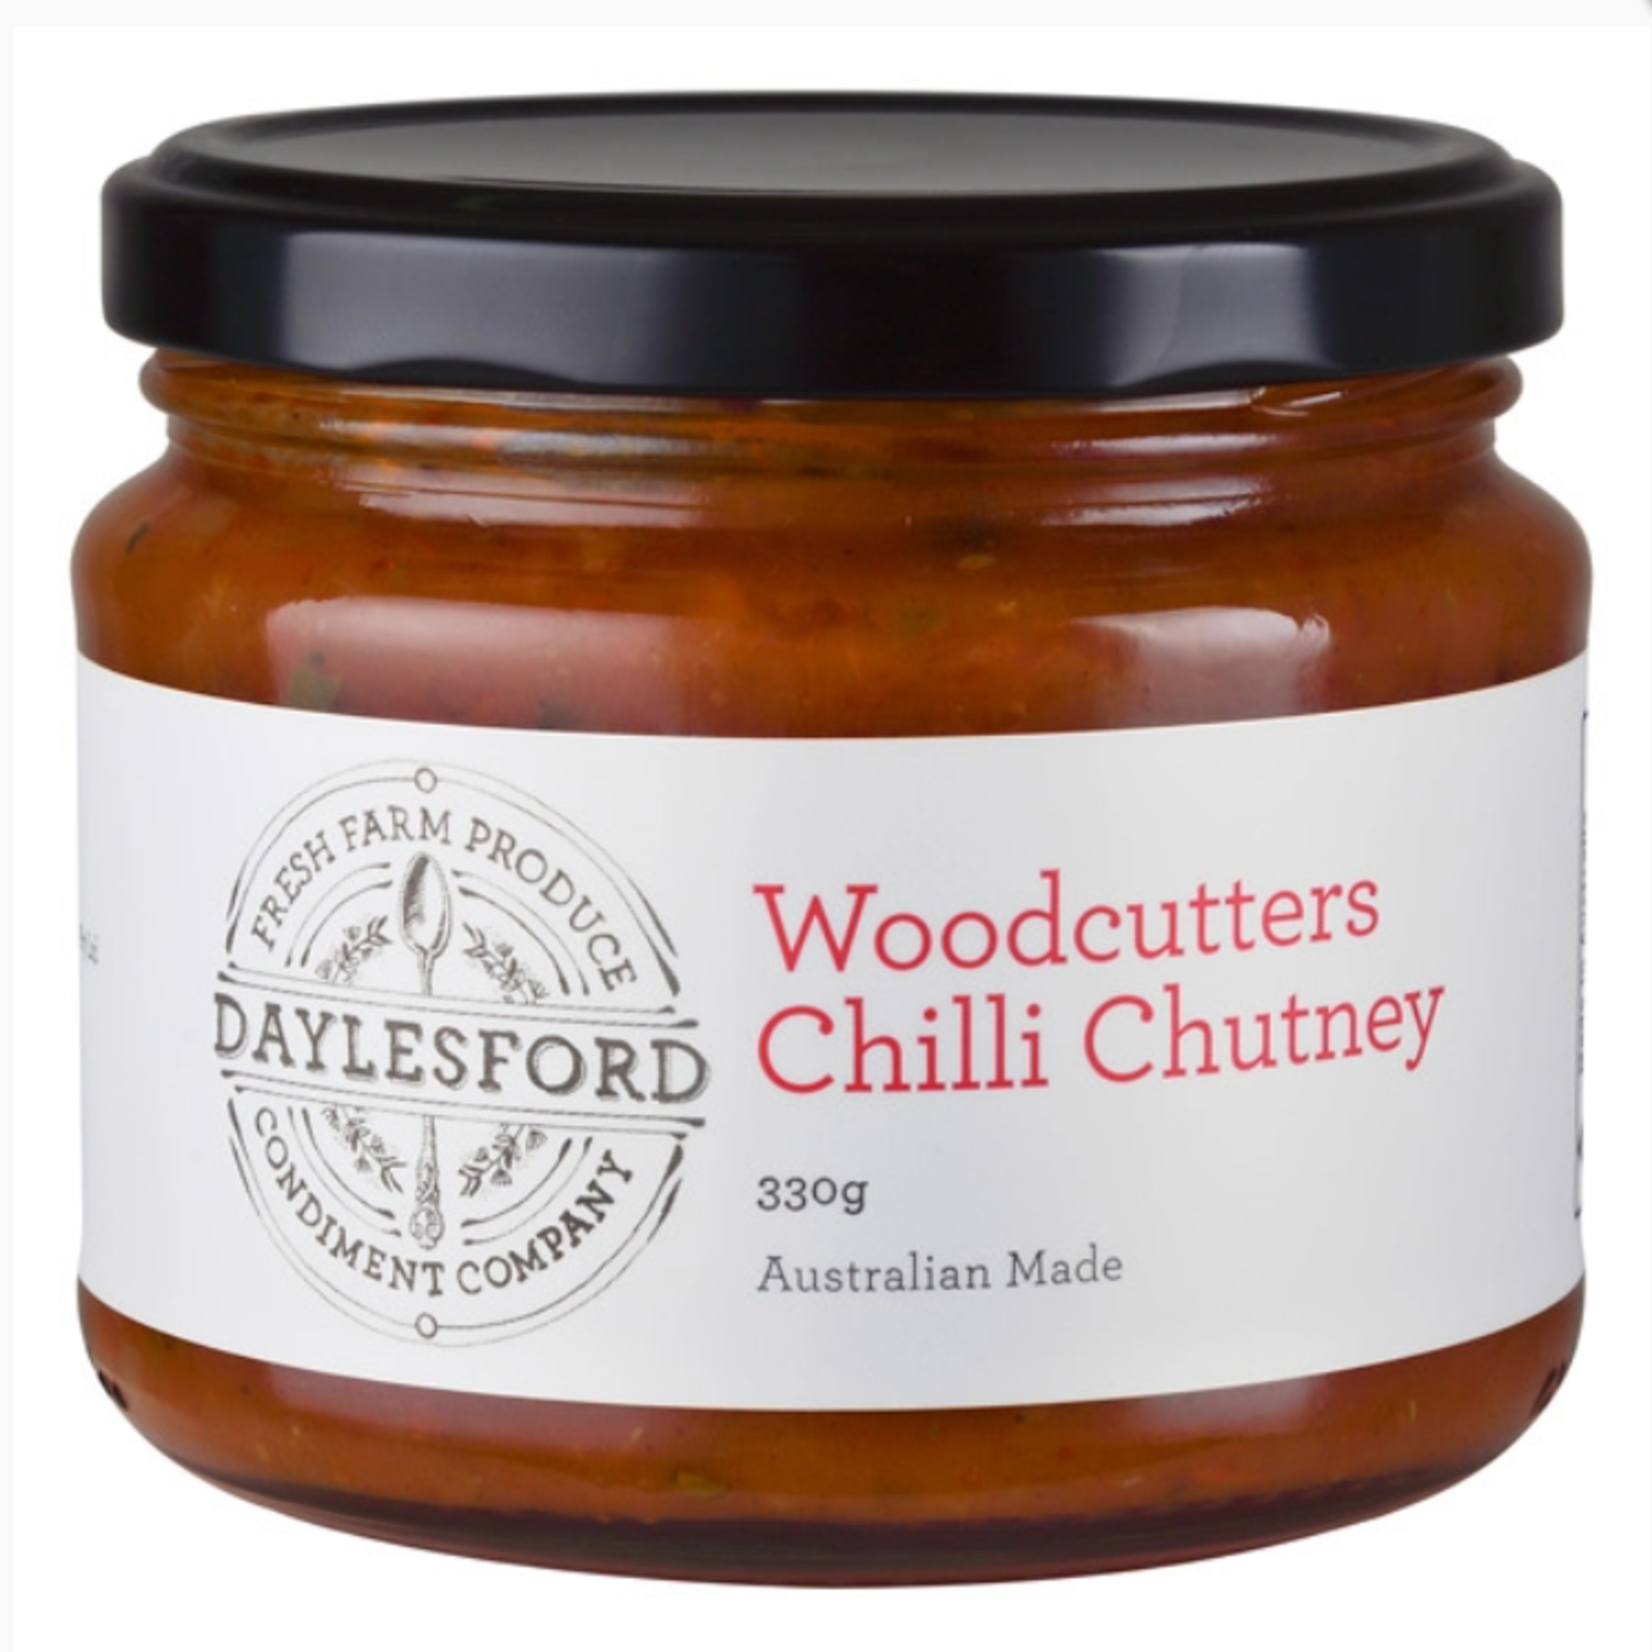 Daylesford Woodcutters Chilli Chutney 33